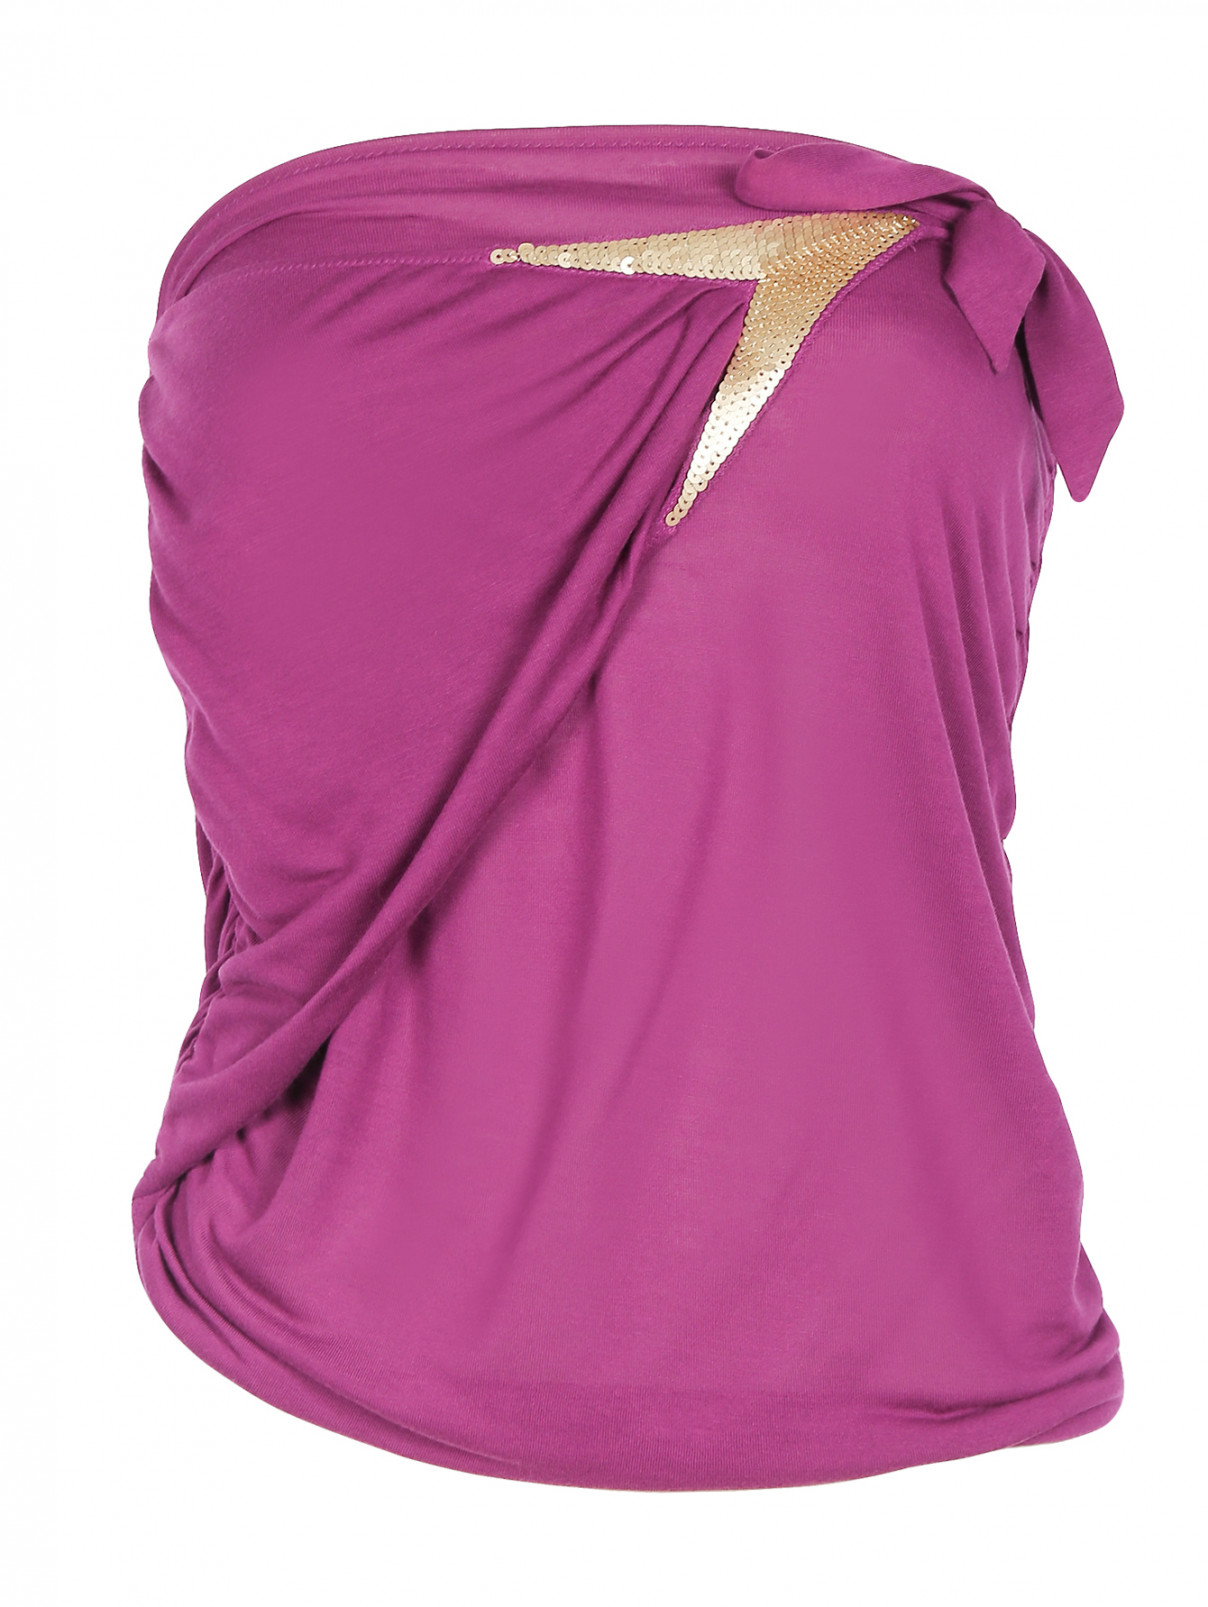 Топ без рукавов с декоративной отделкой La Perla  –  Общий вид  – Цвет:  Фиолетовый